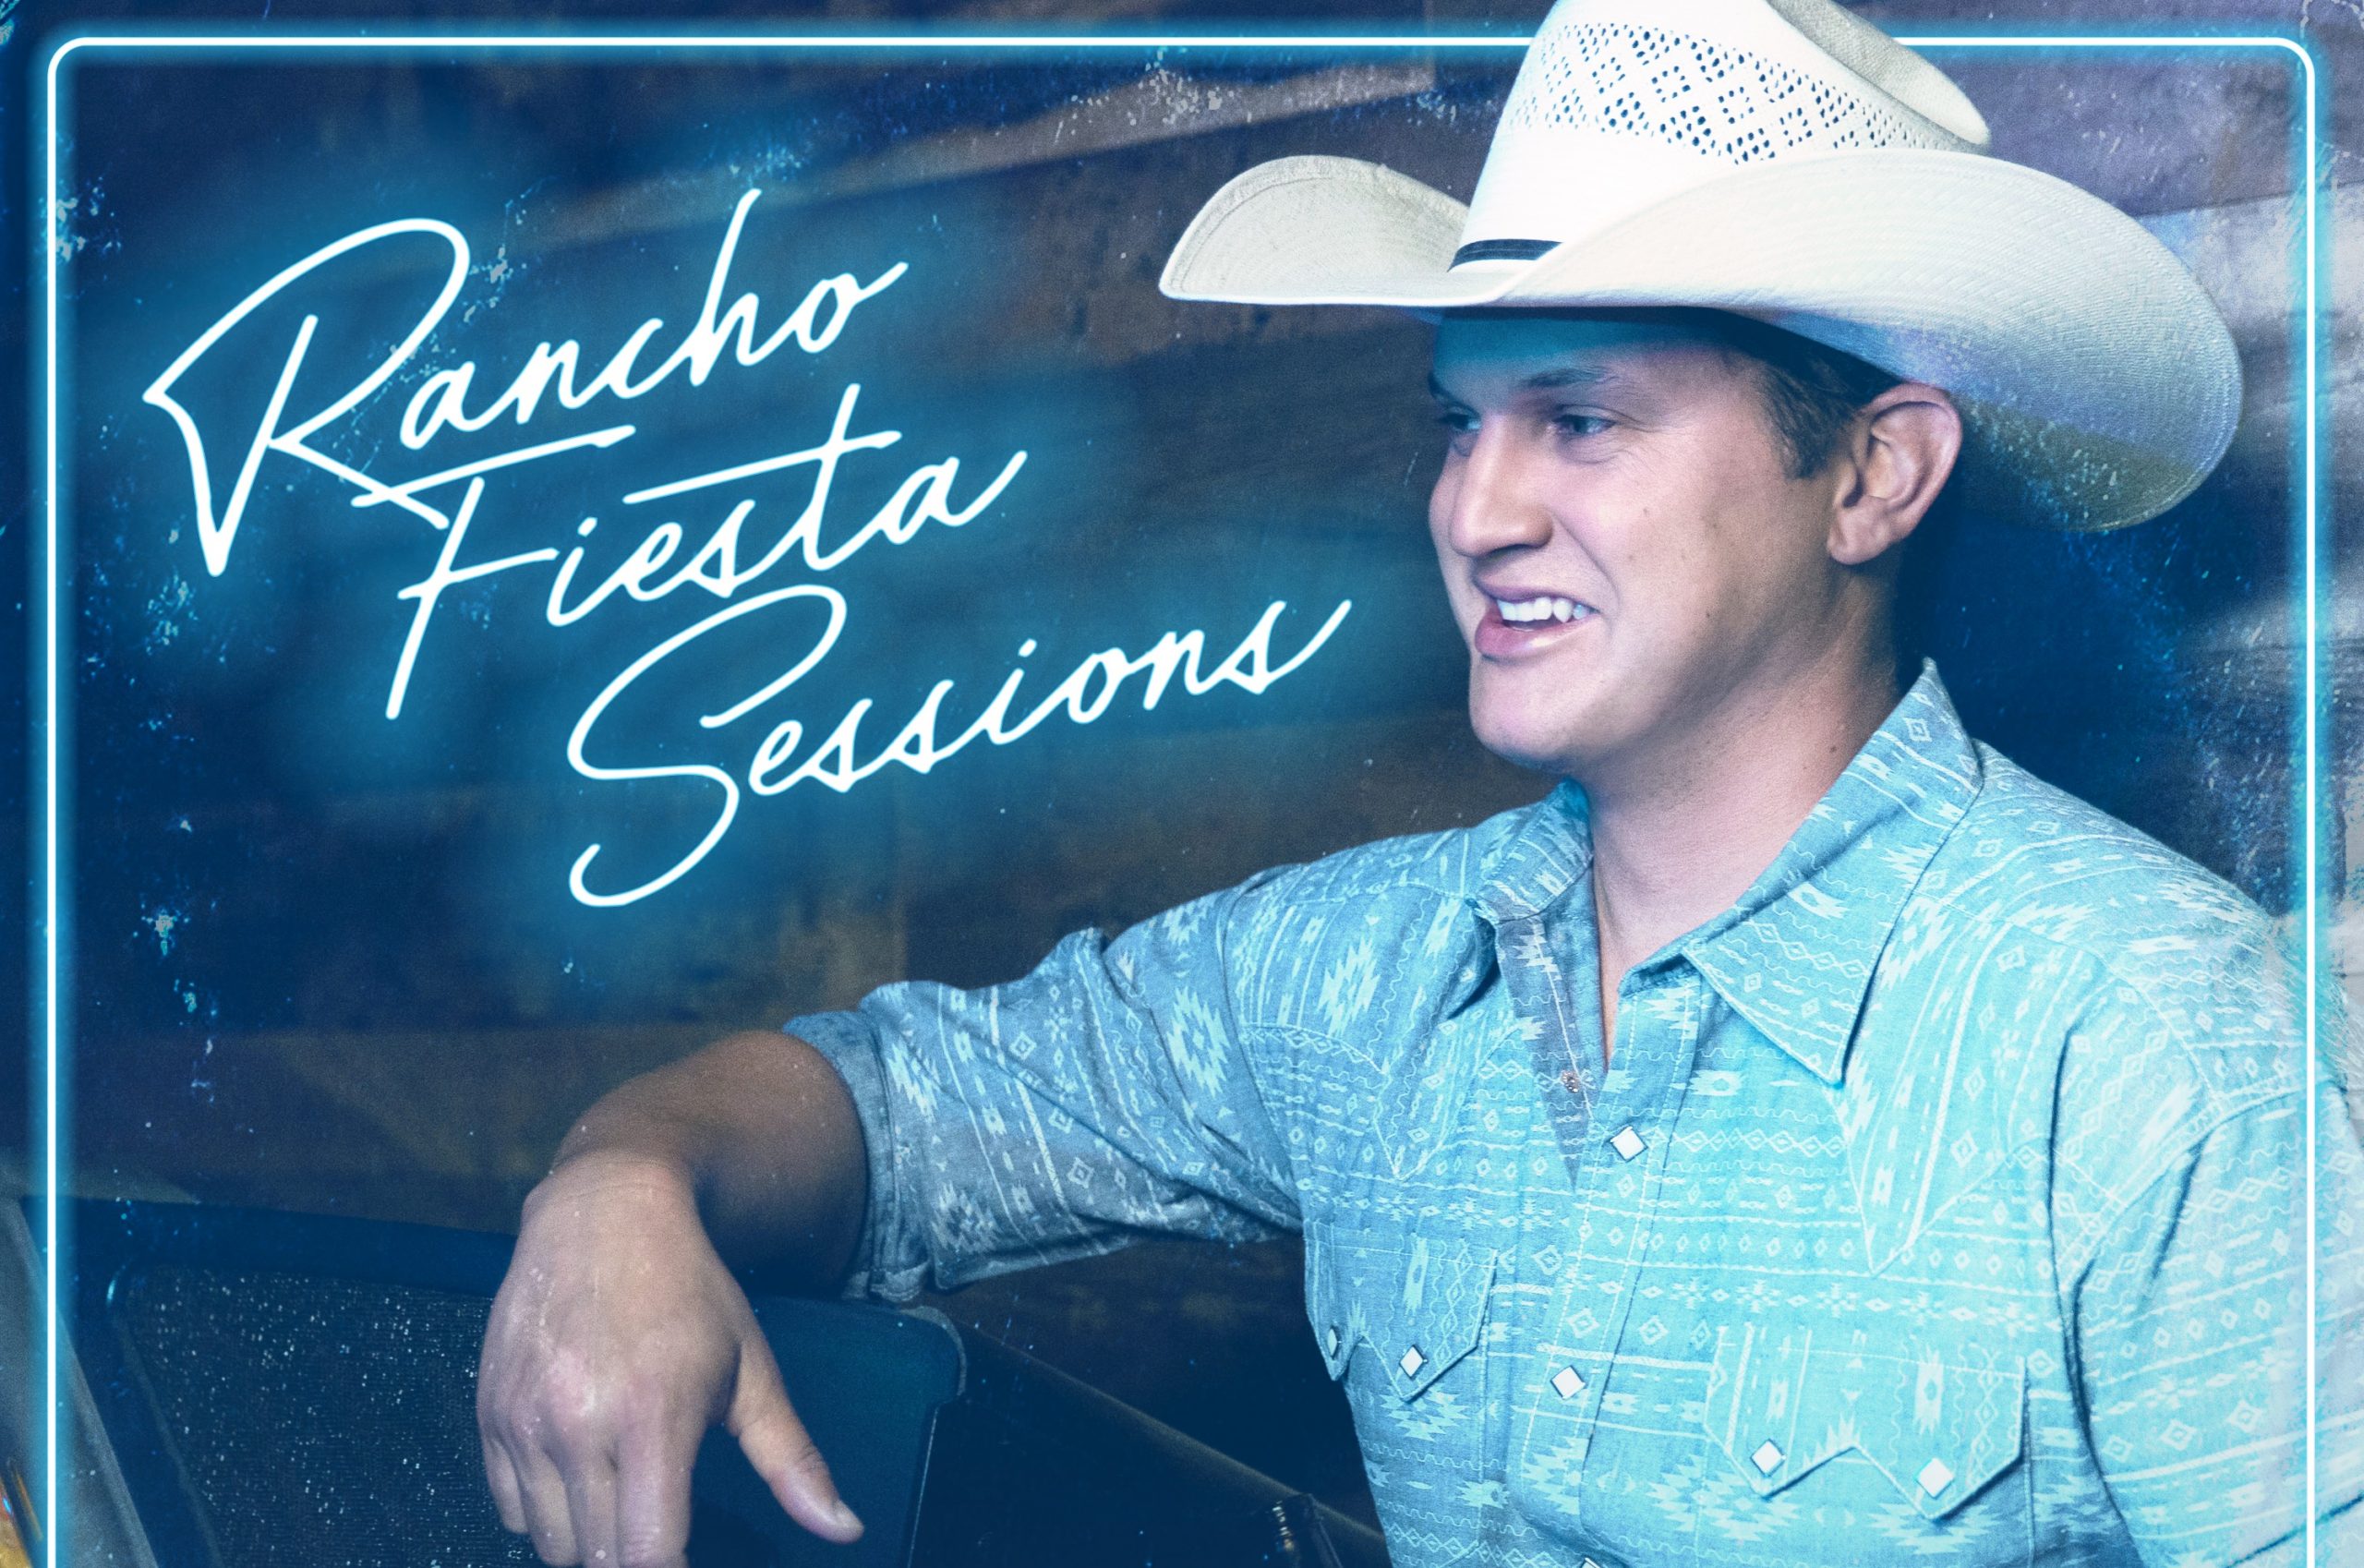 Jon Pardi Drops Surprise Live Album, 'Rancho Fiesta Sessions